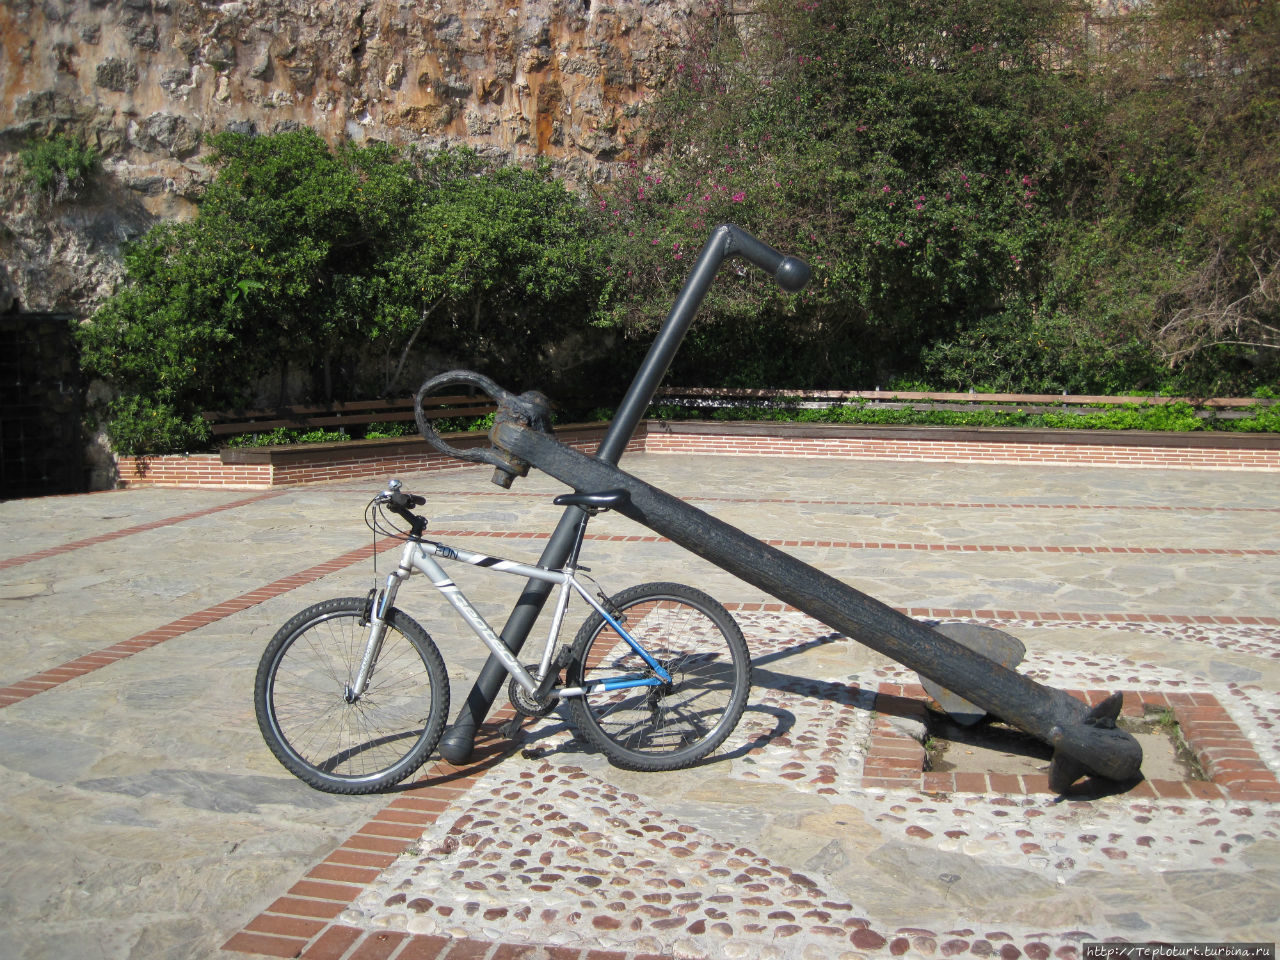 На велосипеде в горы. Часть первая — Аланья, крепость Алания, Турция